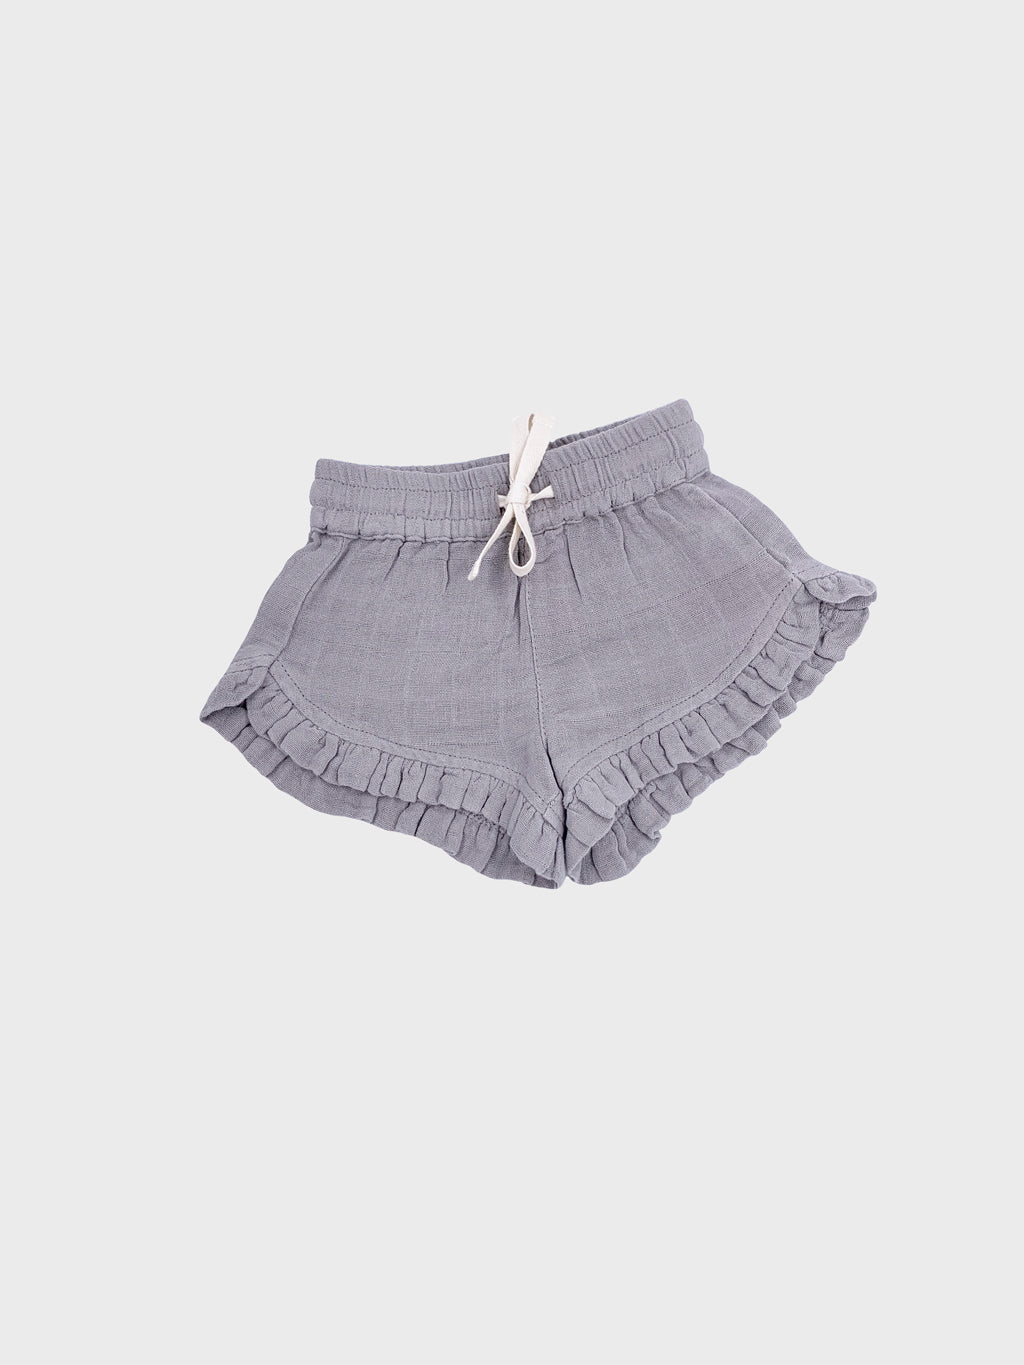 Shorts for Baby Girl | Grey Shorts for Baby Girl | Petit Co.